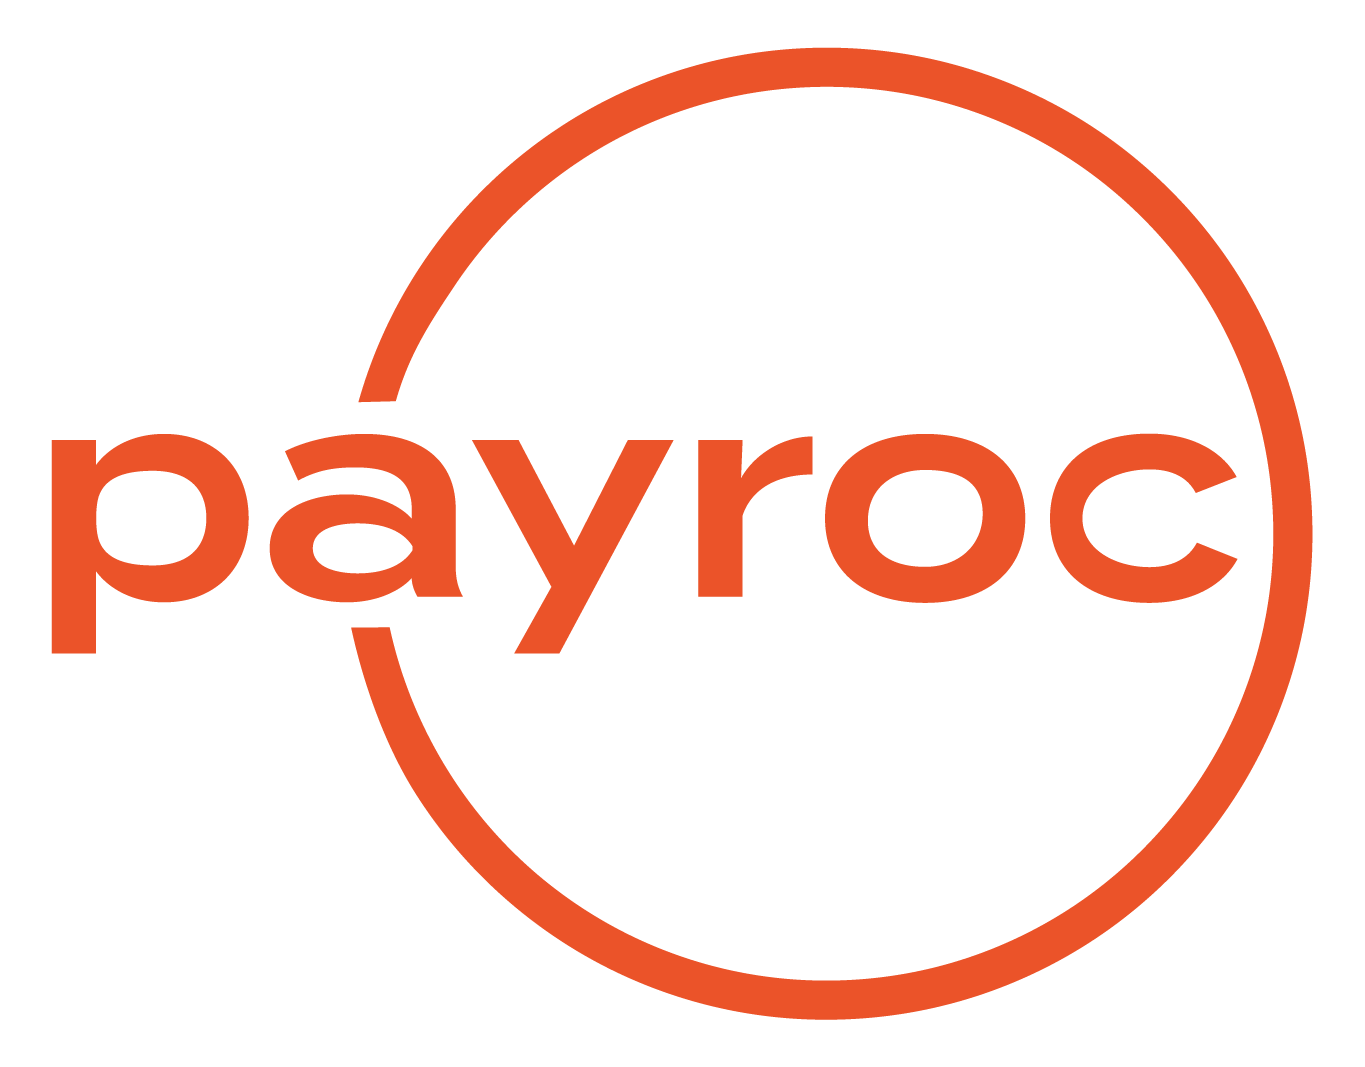 Payroc-logo.png